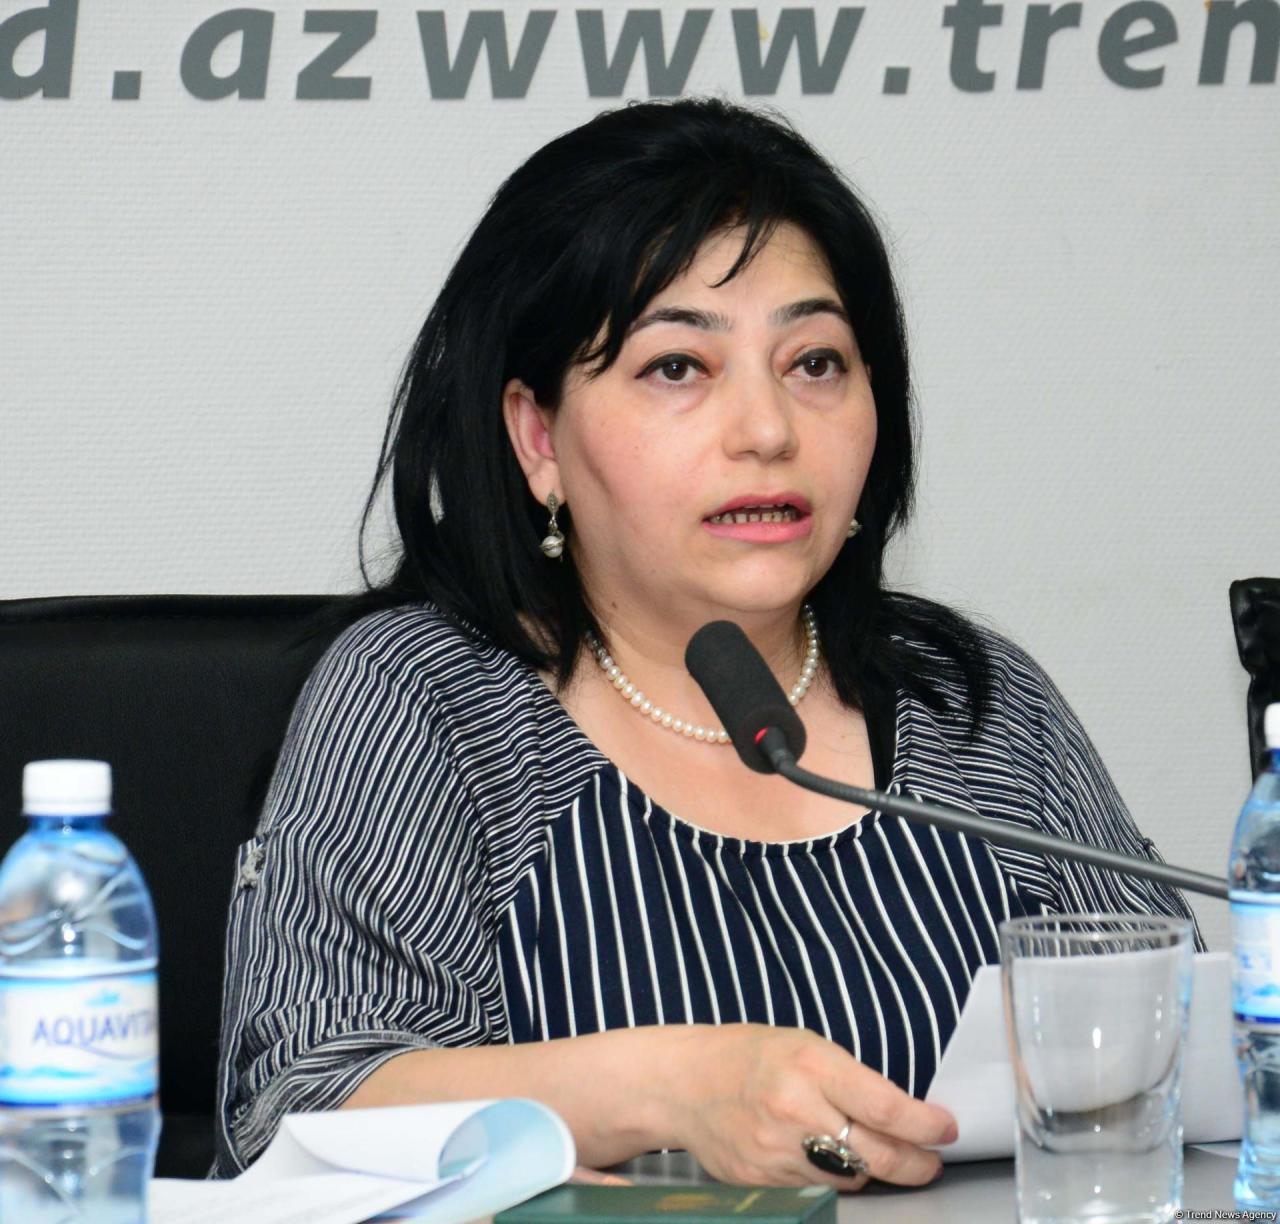 В Баку обсудили модель мультикультурализма на примере защиты прав и сохранения традиций нацменьшинств в Азербайджане